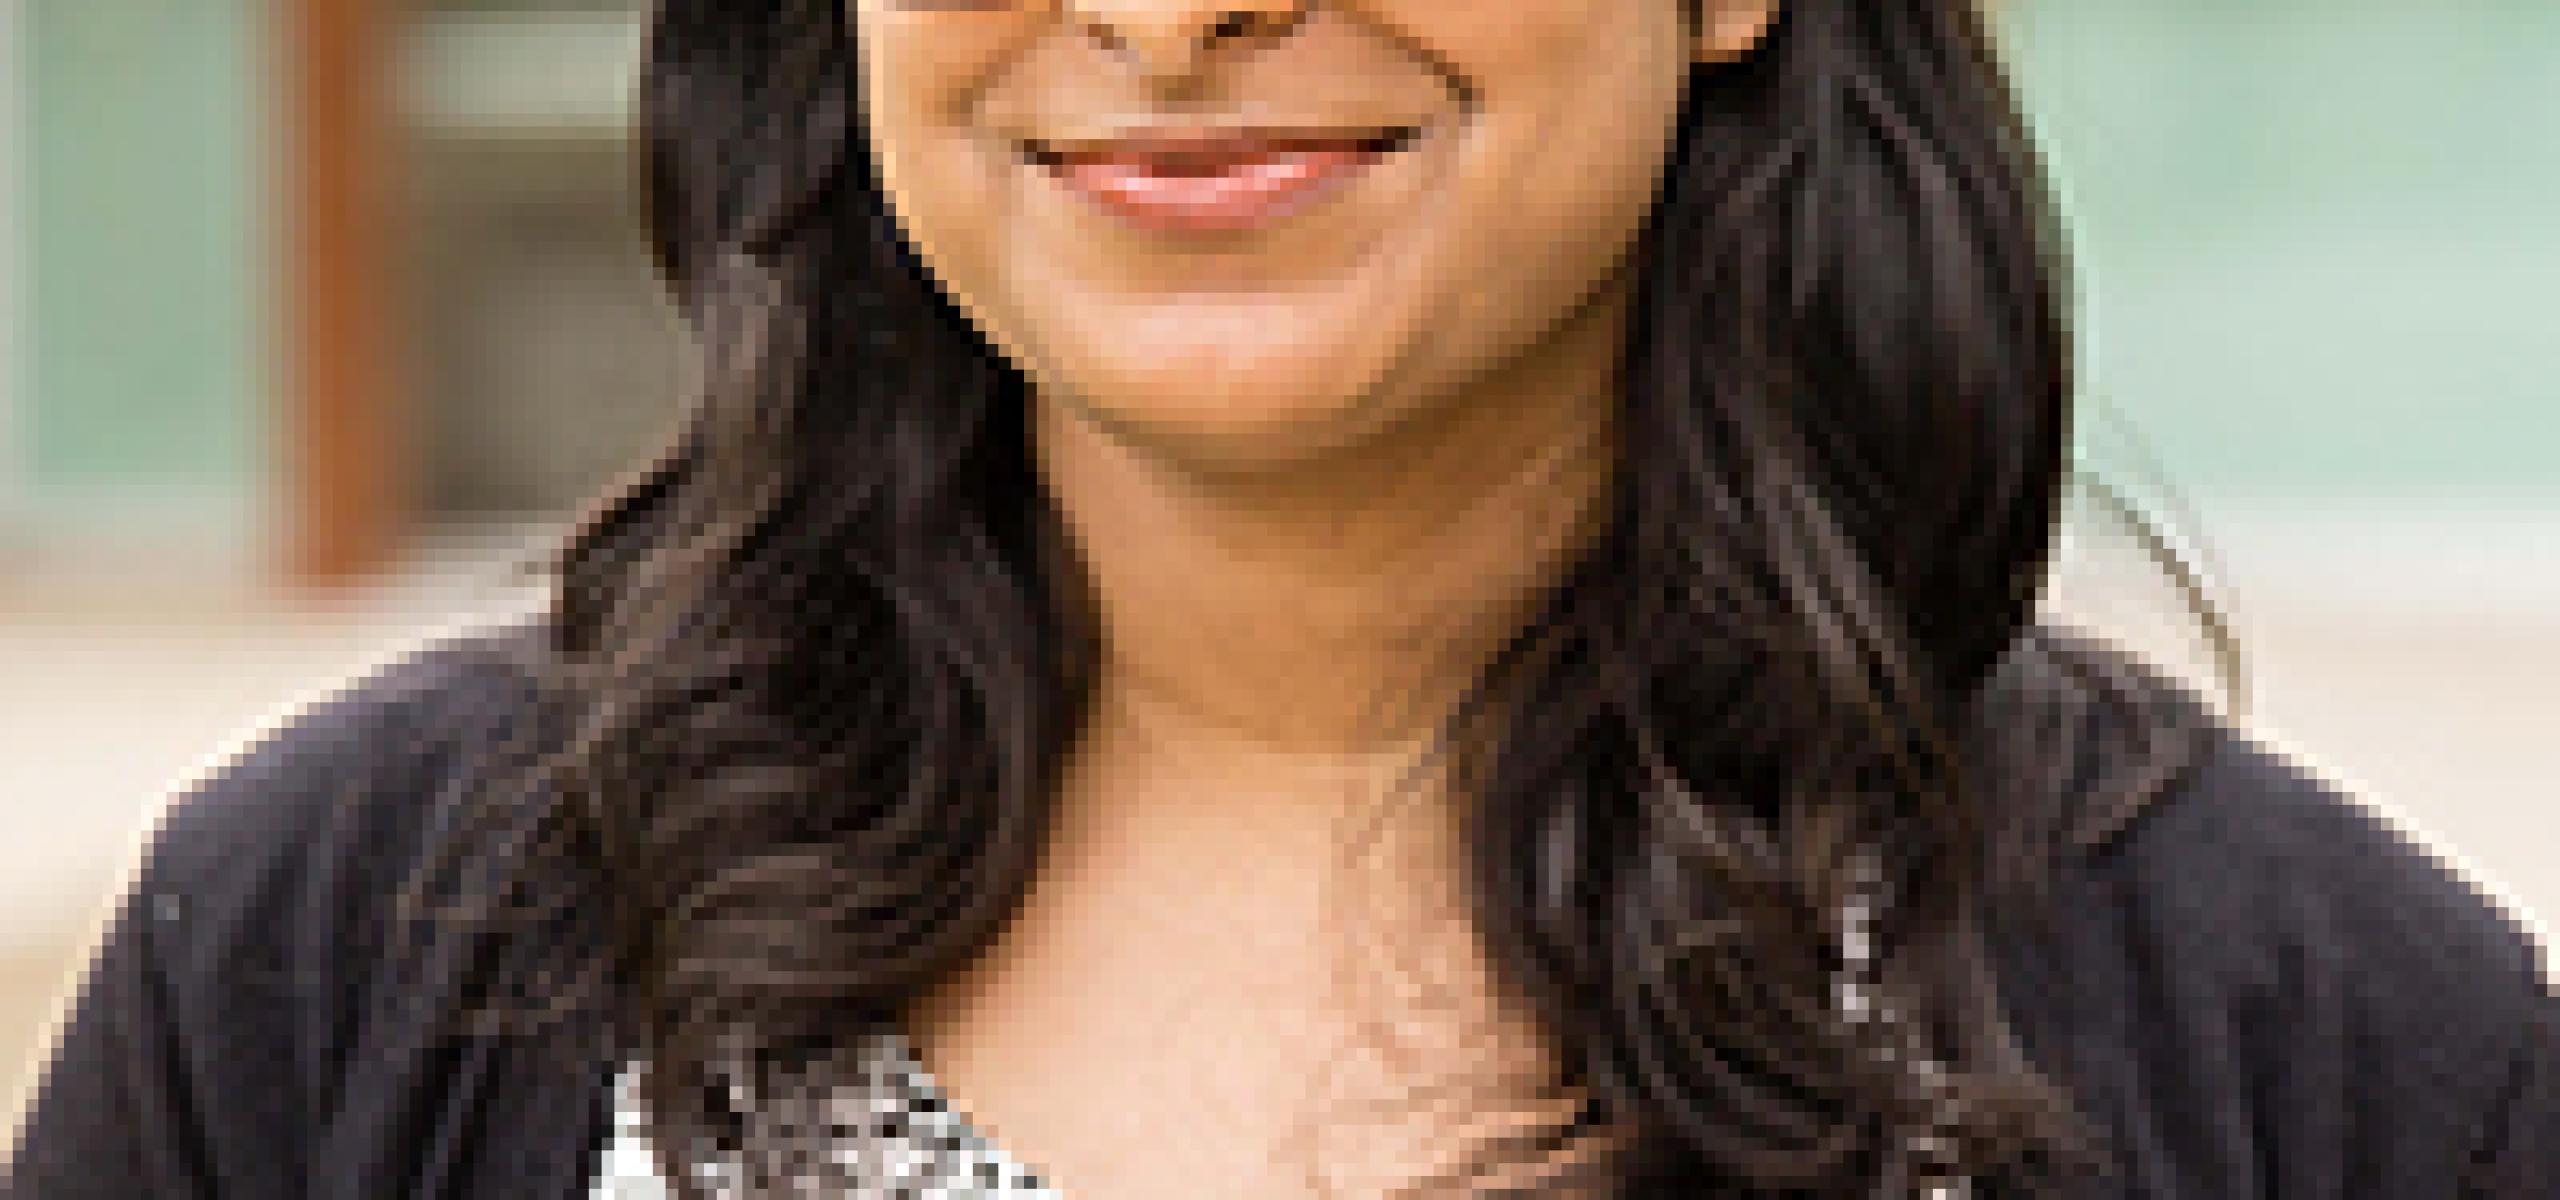 Radhika Chaudhri